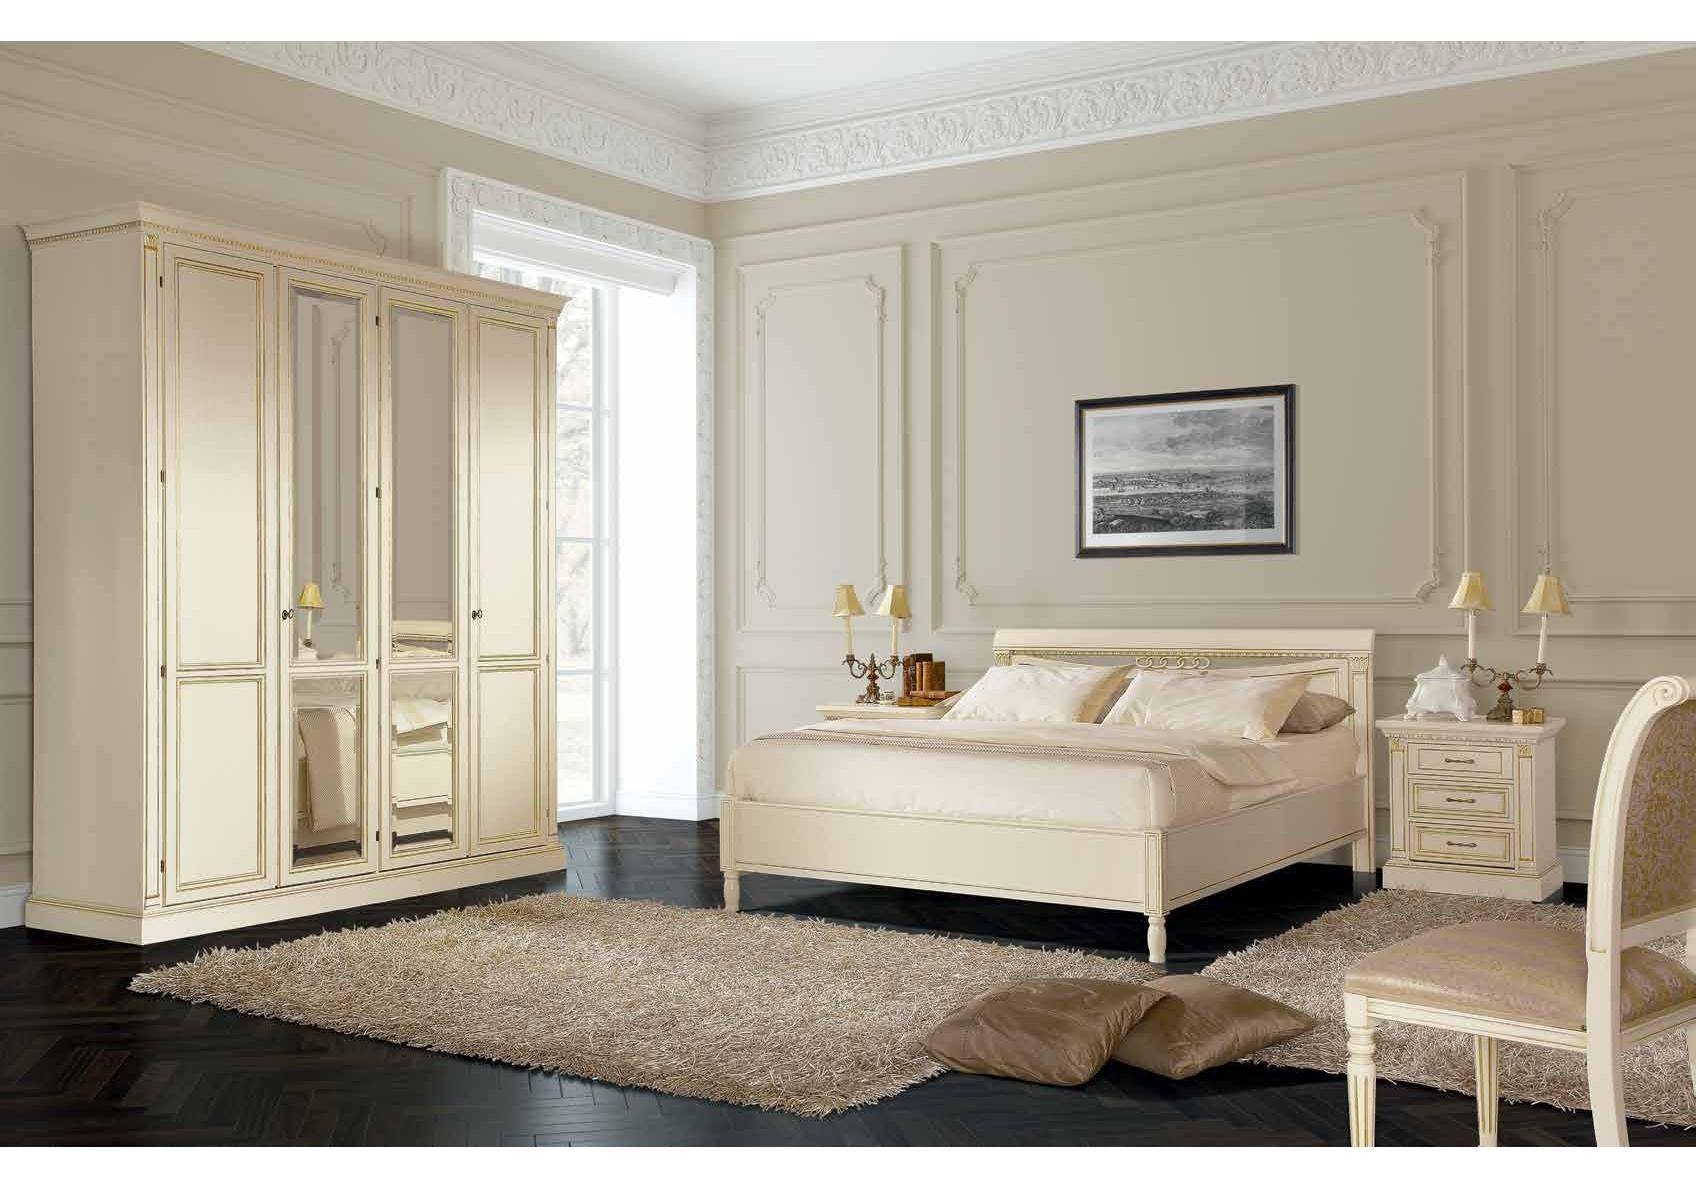 Итальянские спальни - каталог мебели продукции из италии